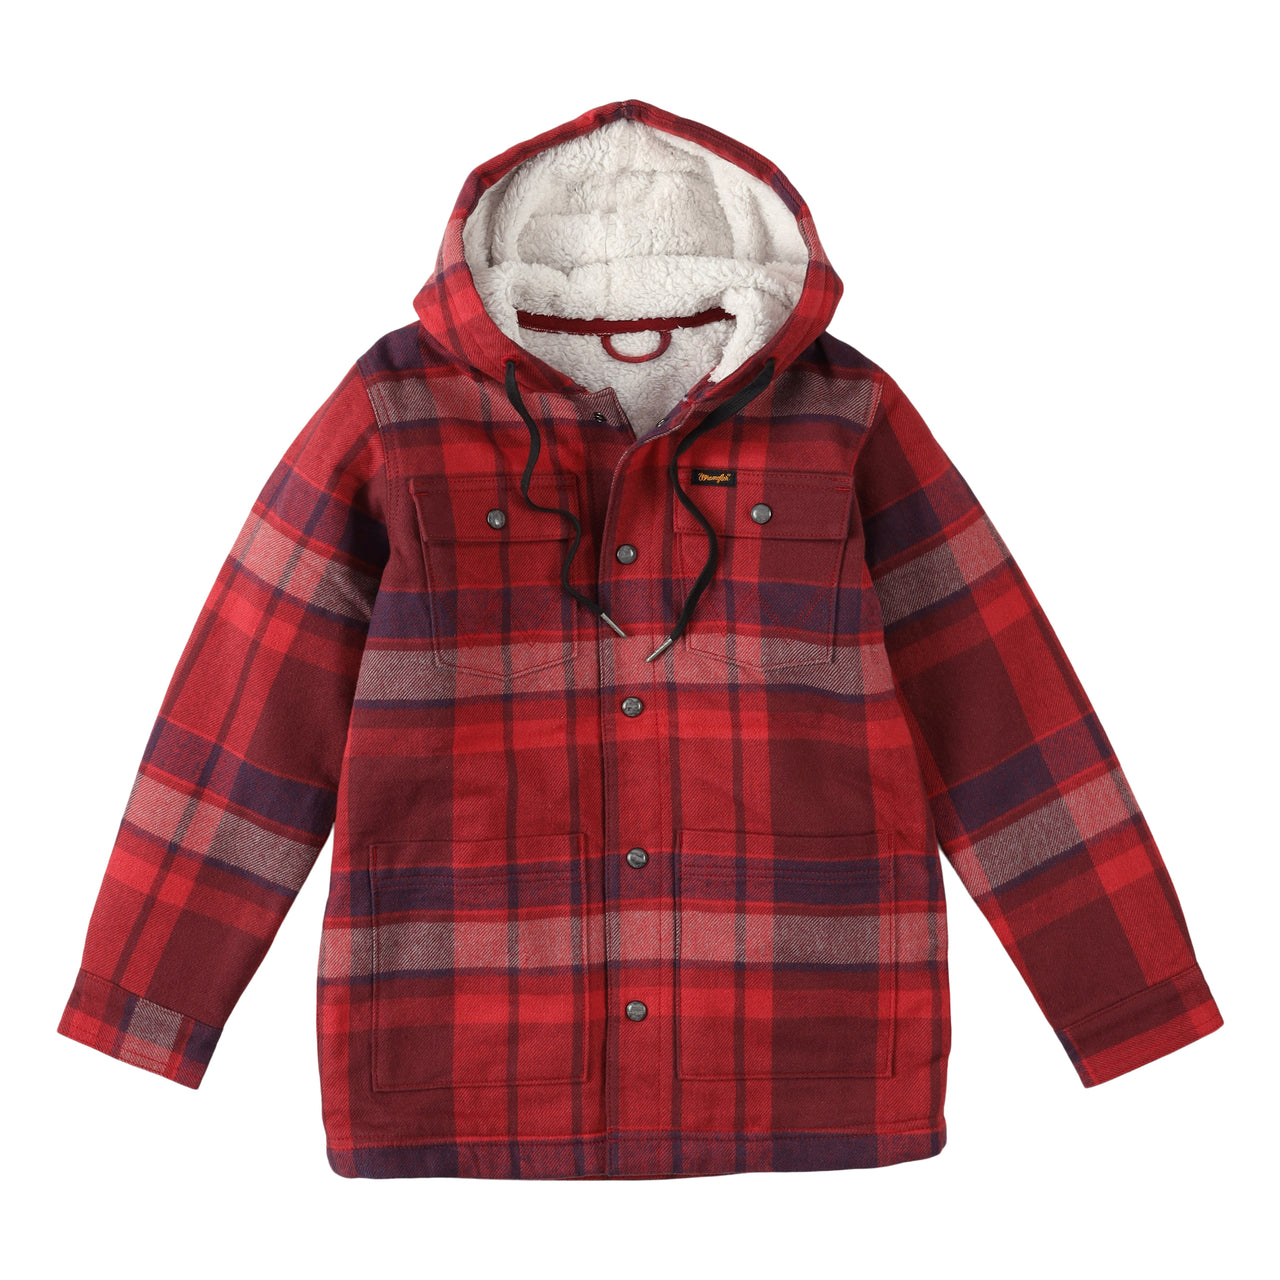 Wranglers Boy's Sherpa Lined Flannel Hooded Shirt Jacket - Garnet